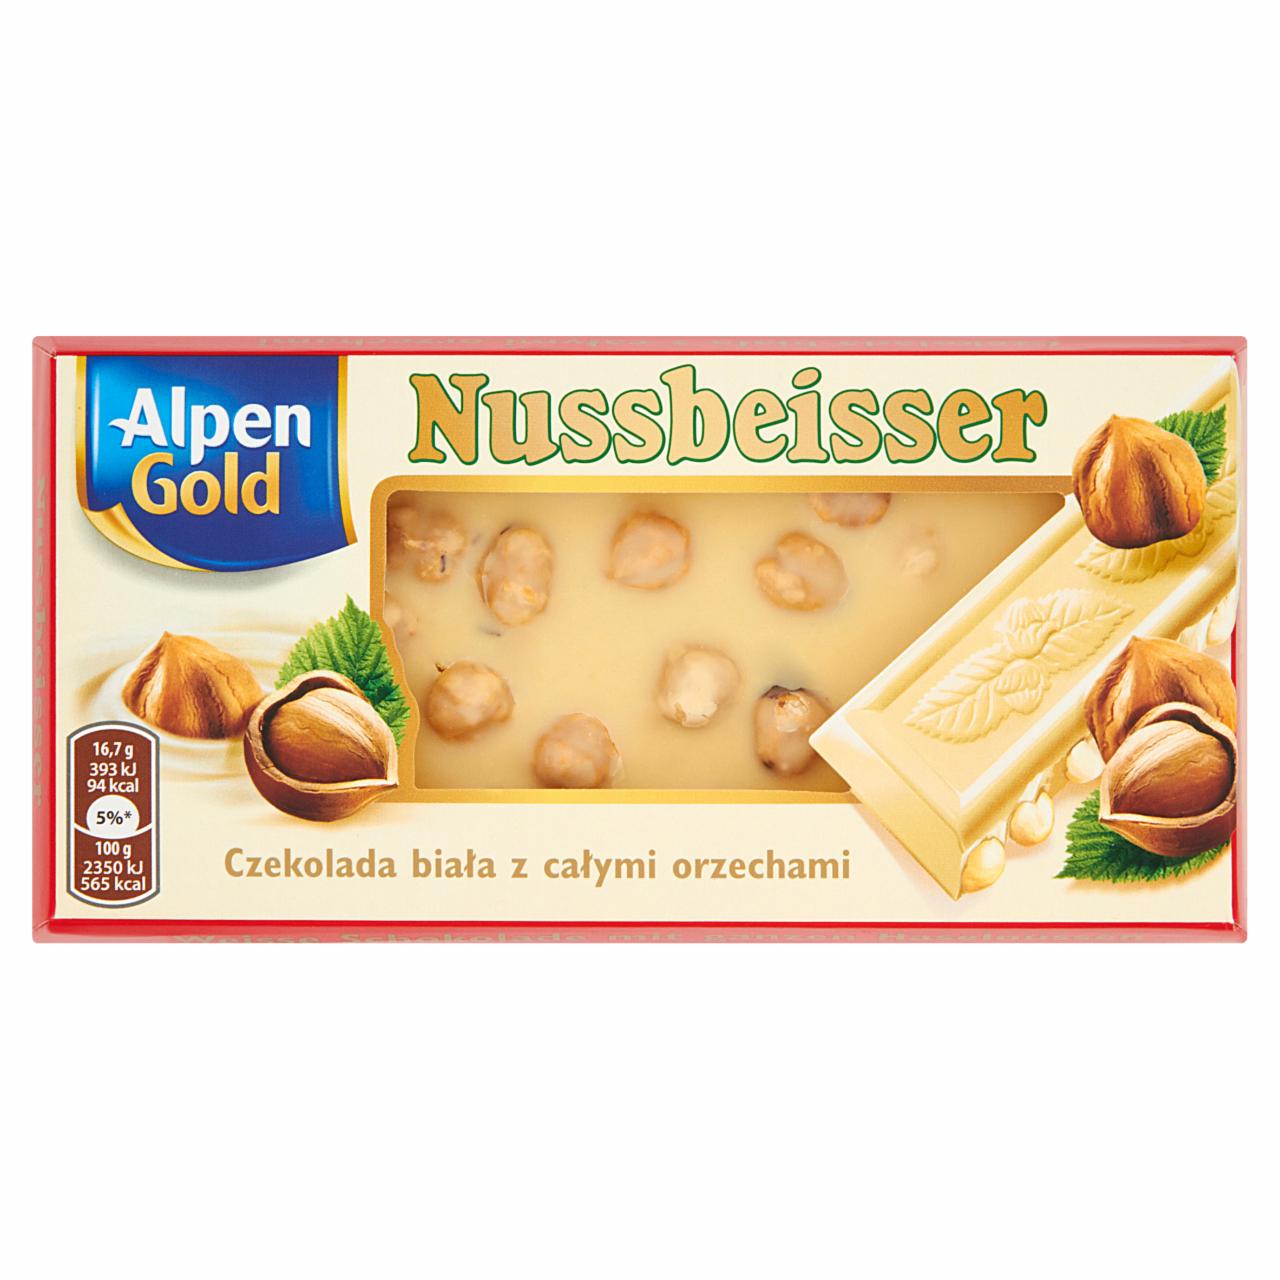 Zdjęcia - Alpen Gold Nussbeisser Czekolada biała z całymi orzechami 100 g